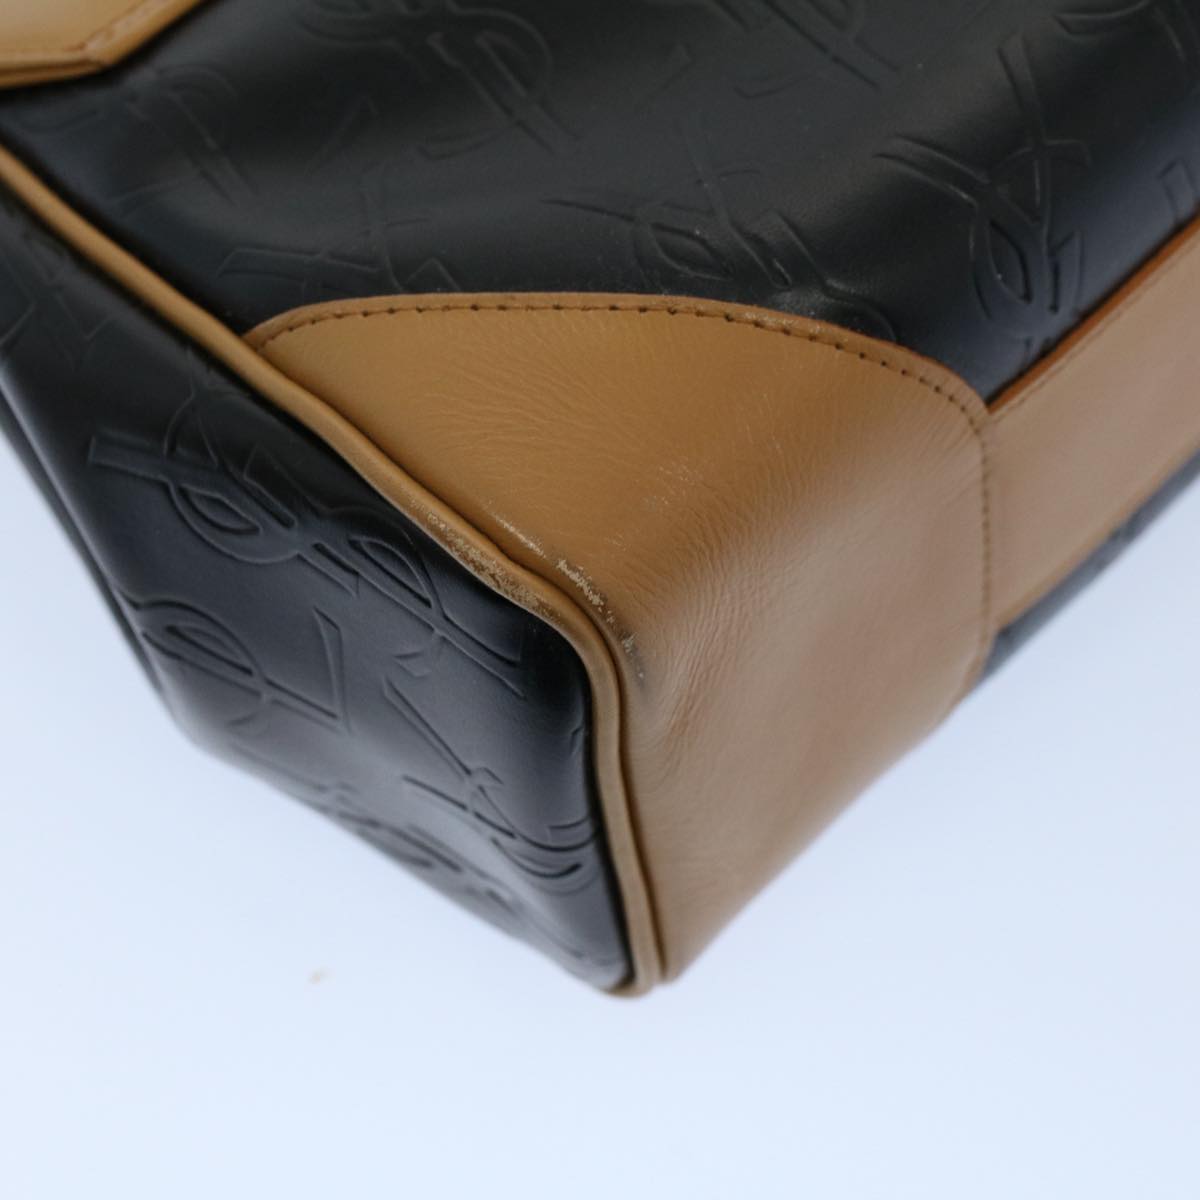 SAINT LAURENT Cassandra Hand Bag PVC Leather Black Auth yk8873